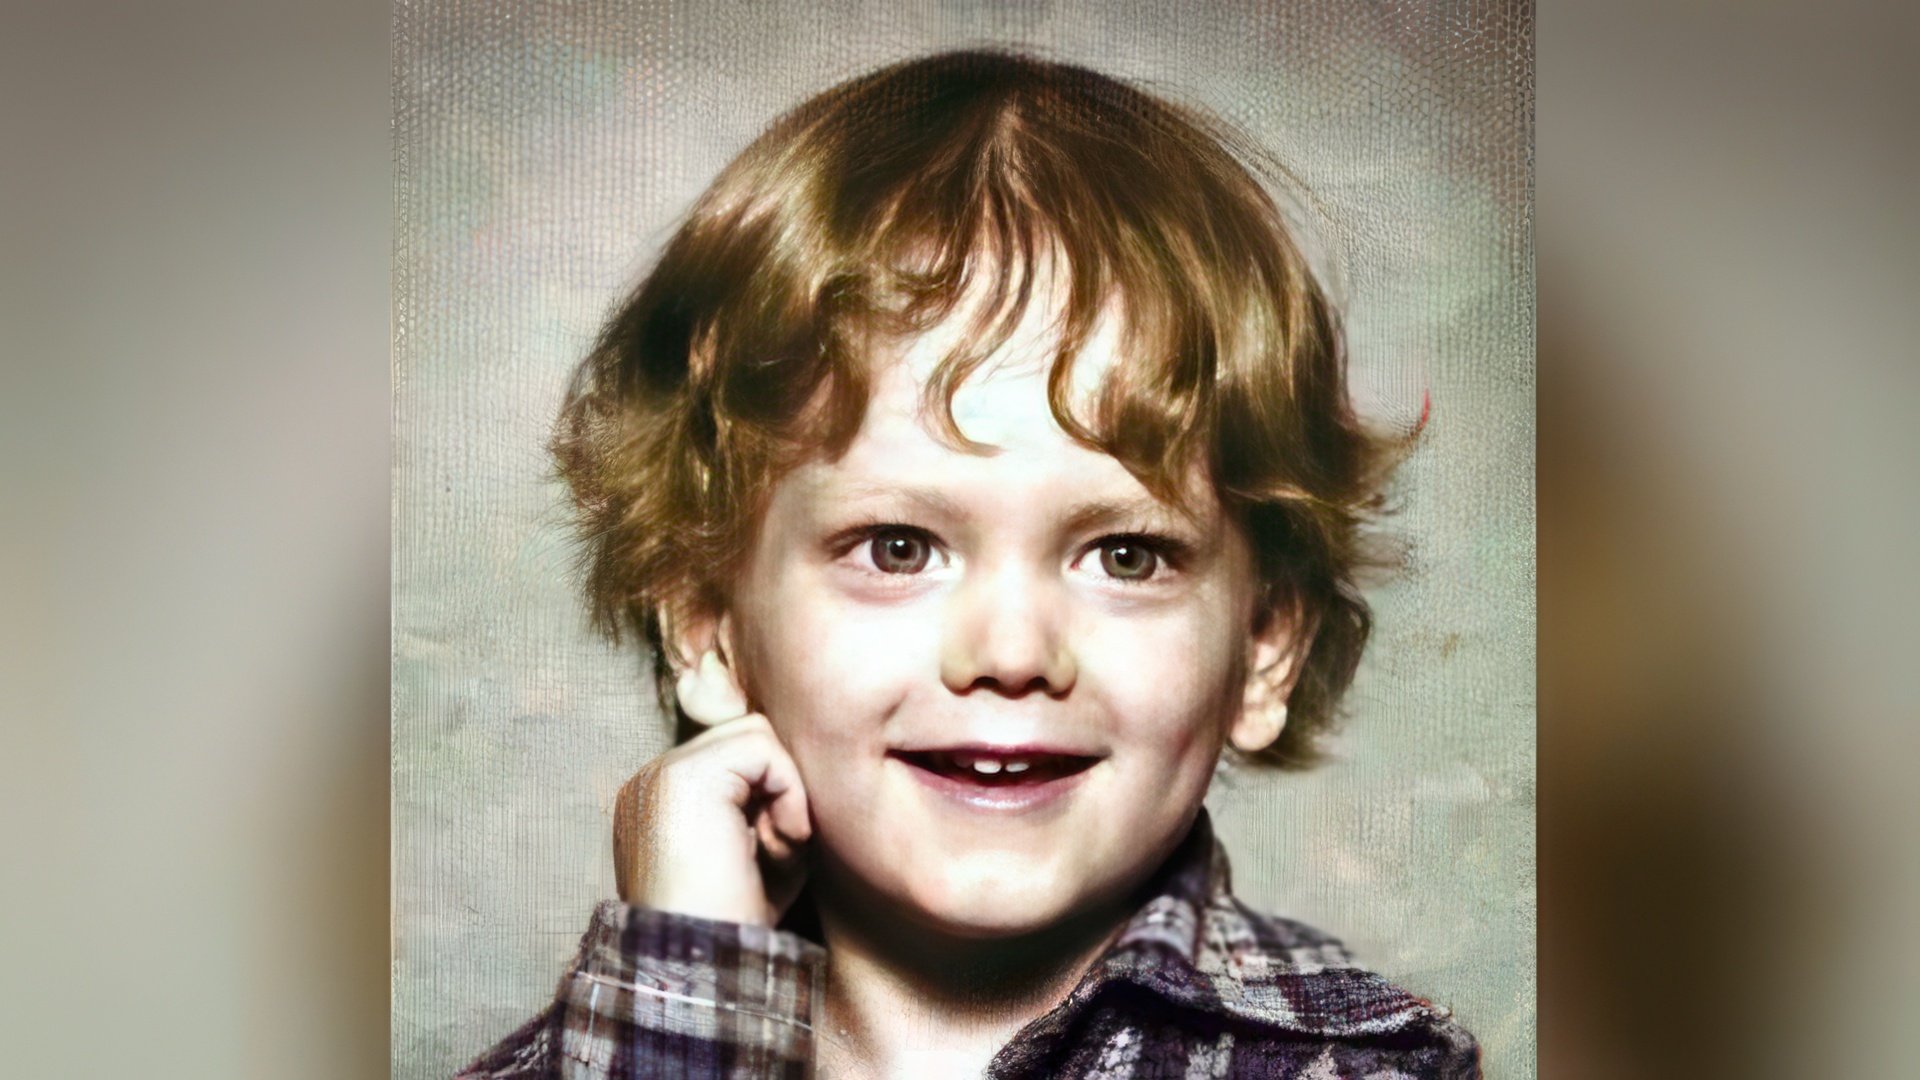 Eminem's childhood photo